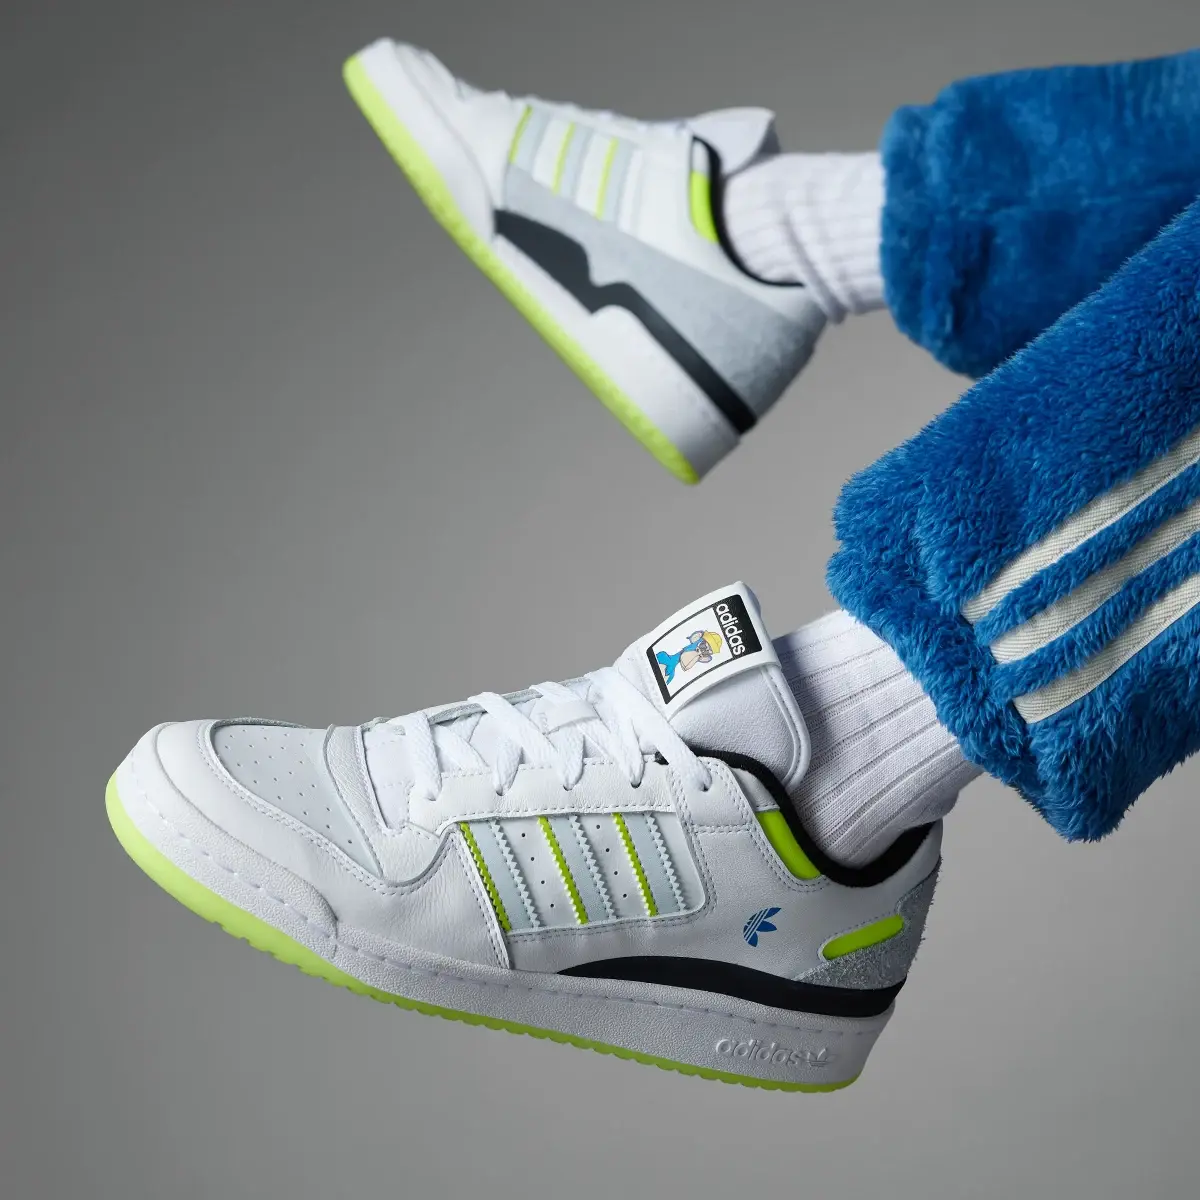 Adidas Forum Low CL x Indigo Herz Schuh. 2